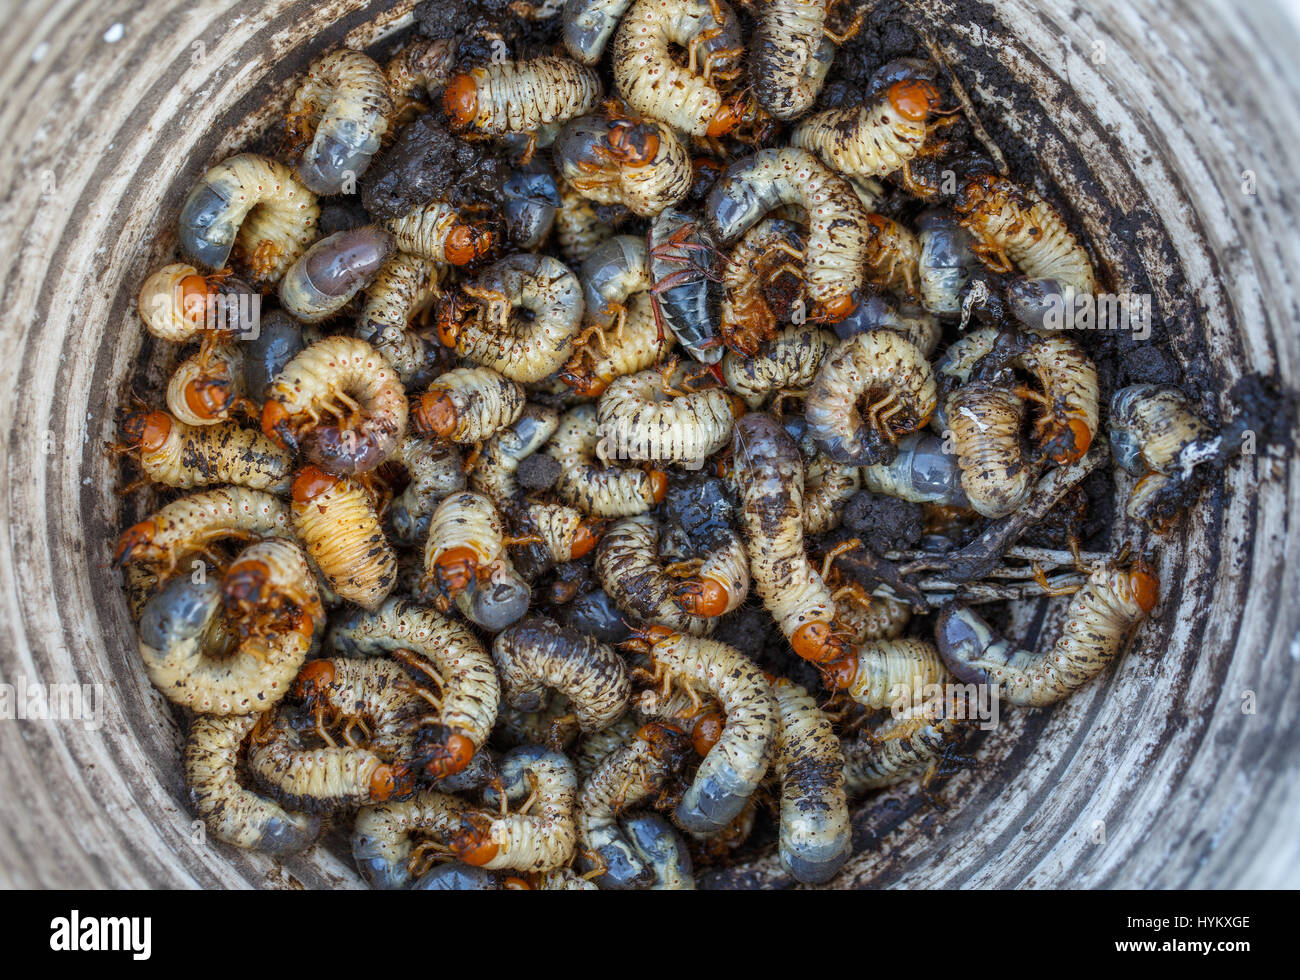 Les larves de coléoptères peut recueillies dans un seau Banque D'Images